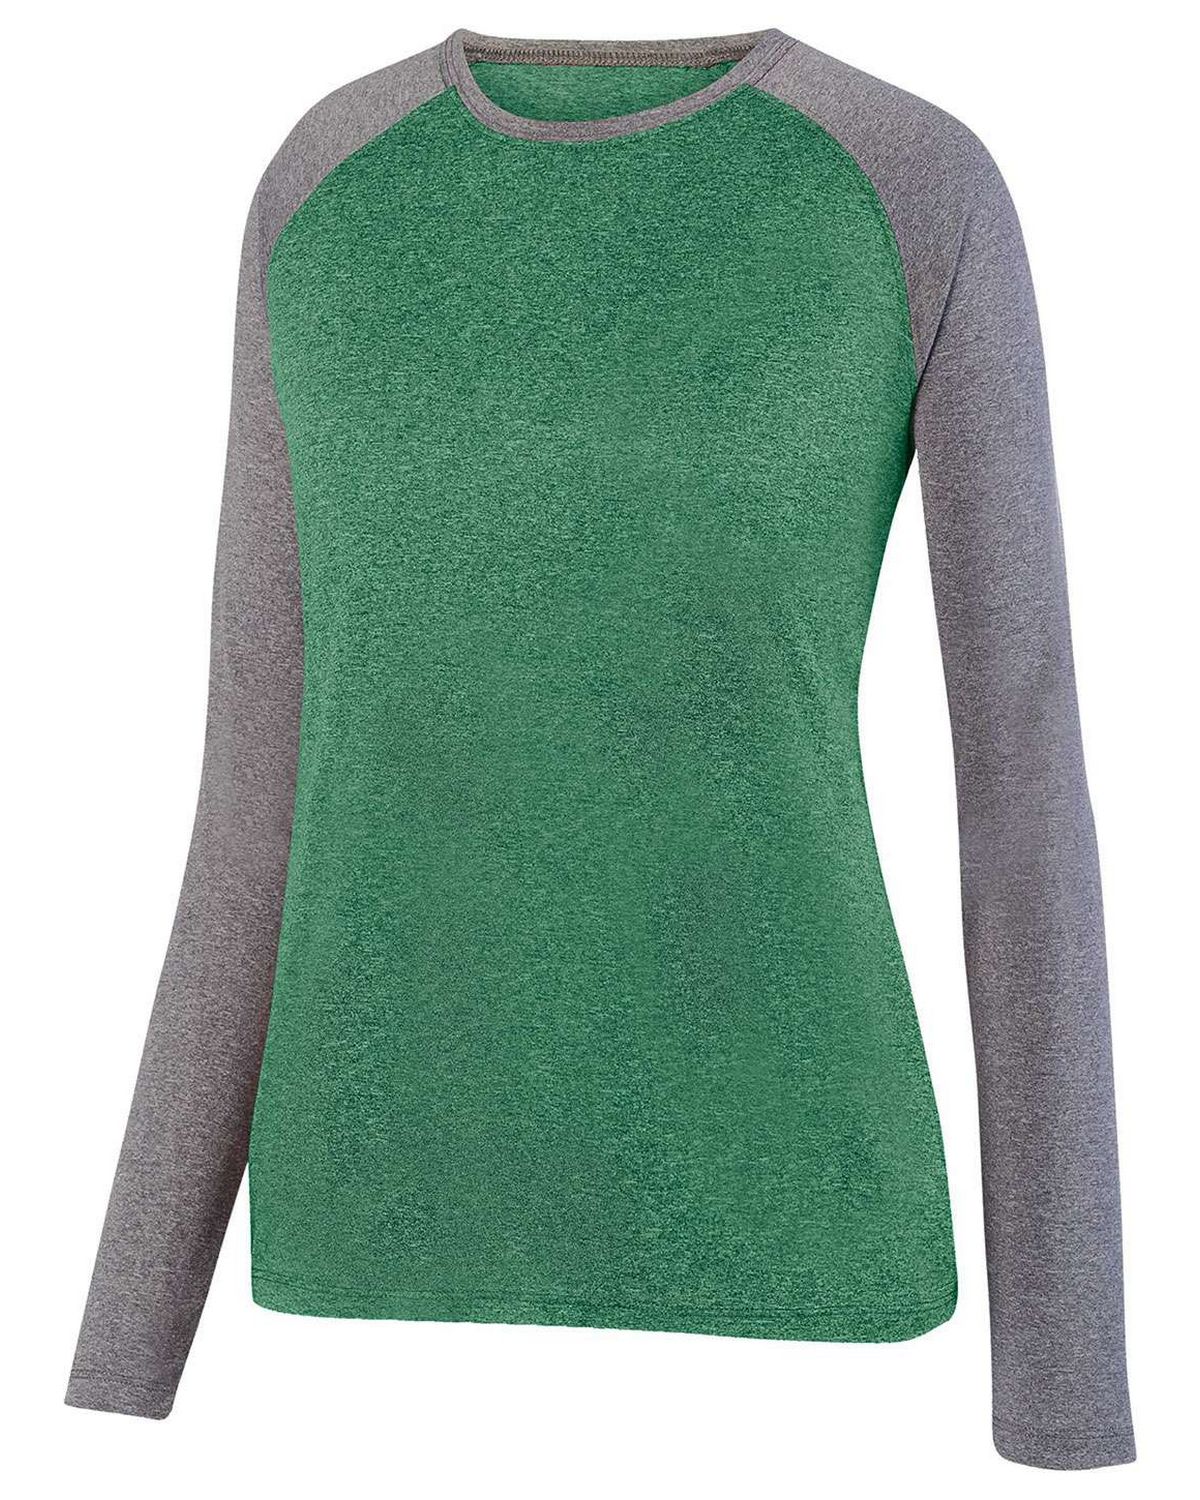 Augusta Sportswear 2817 Women's Kinergy Two Color Long Sleeve Raglan T-Shirt